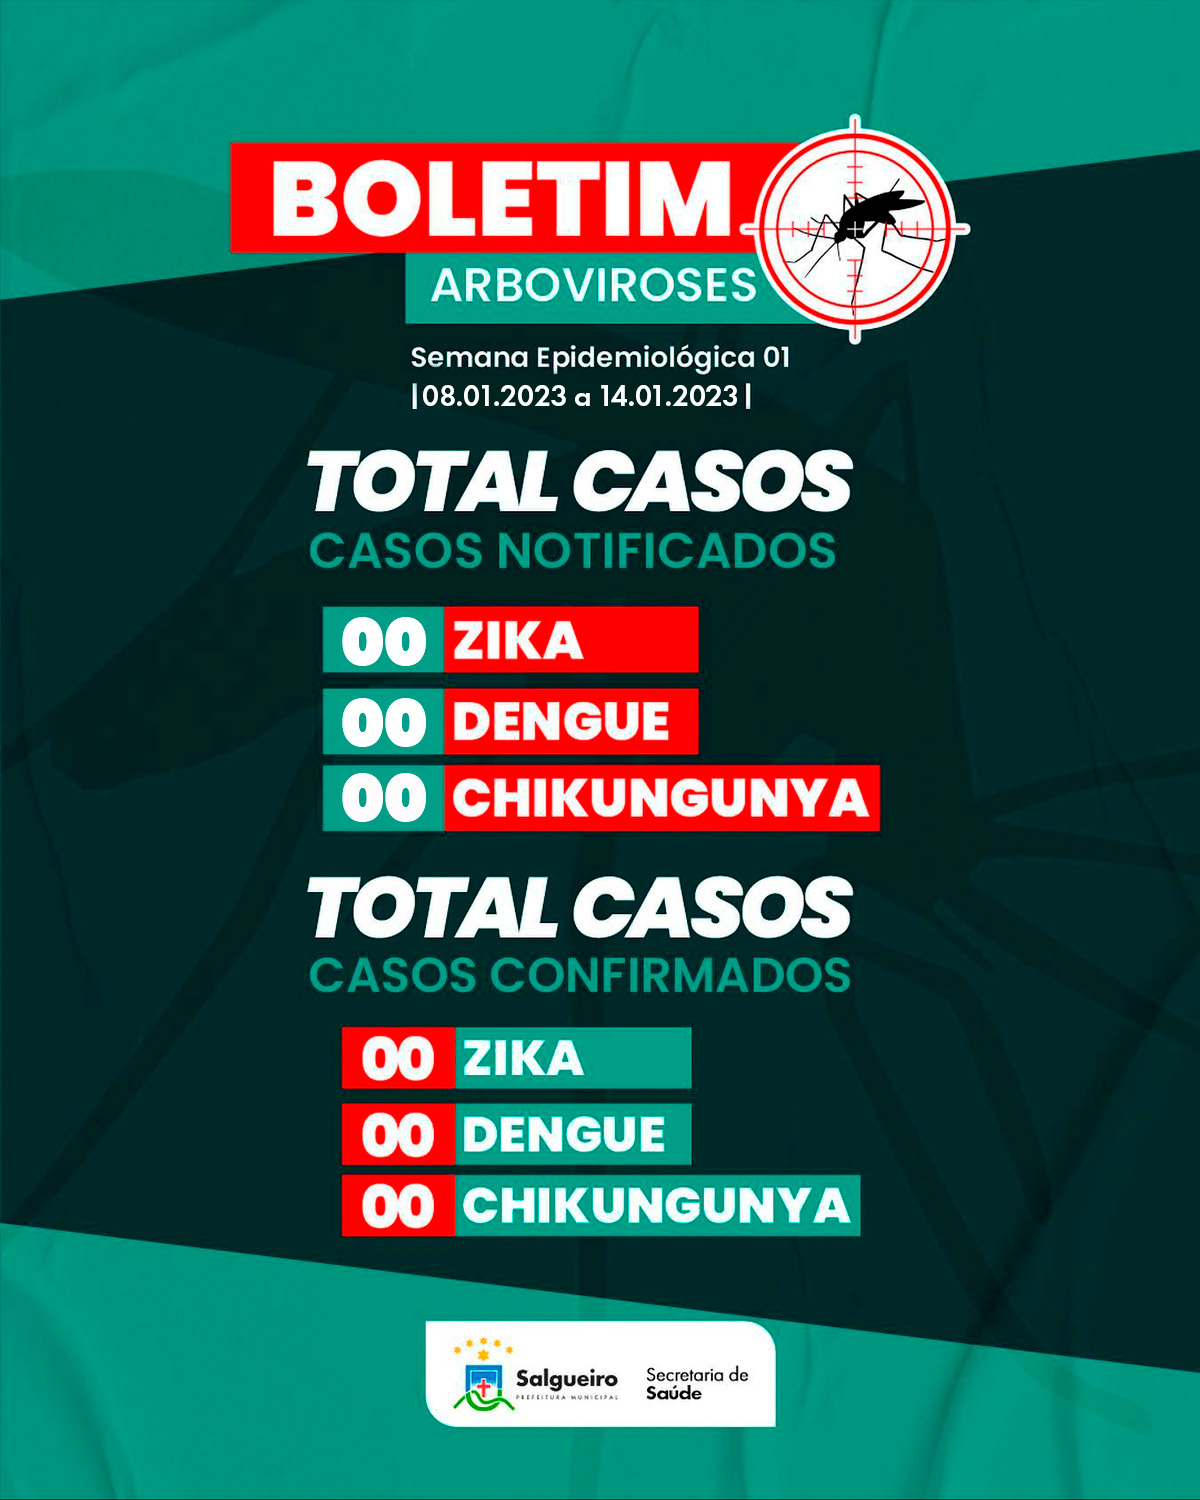 Boletim Arboviroses - Semana Epidemiológica 01 - 01.01 a 07.01.2023.